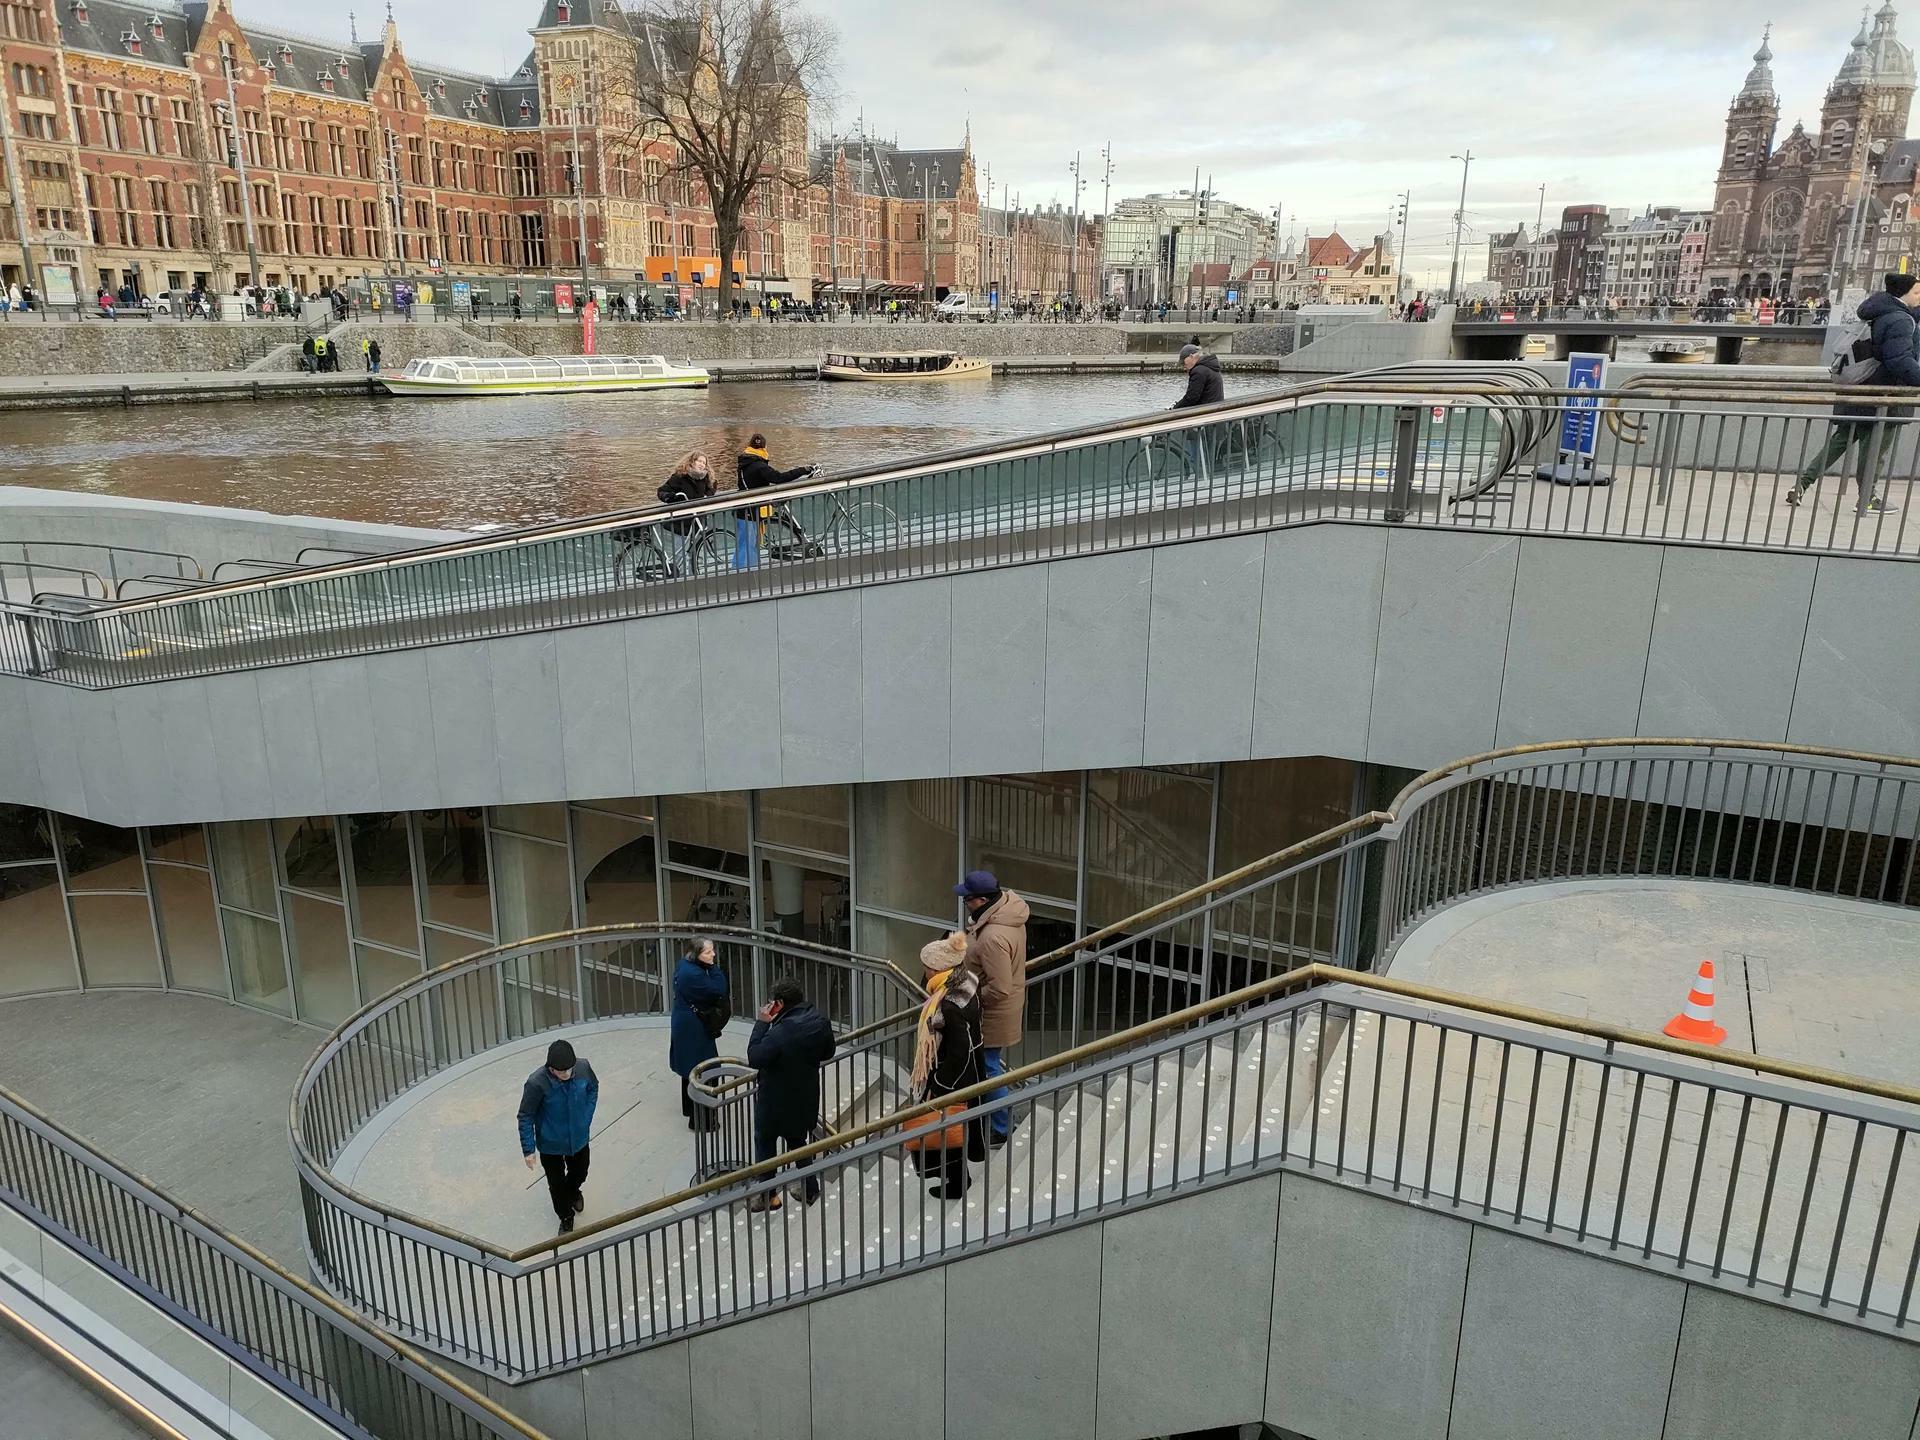 une autre image du nouveau garage à vélos d’amsterdam, avec un espace pour 7000 vélos sous l’eau en face de la gare centrale.